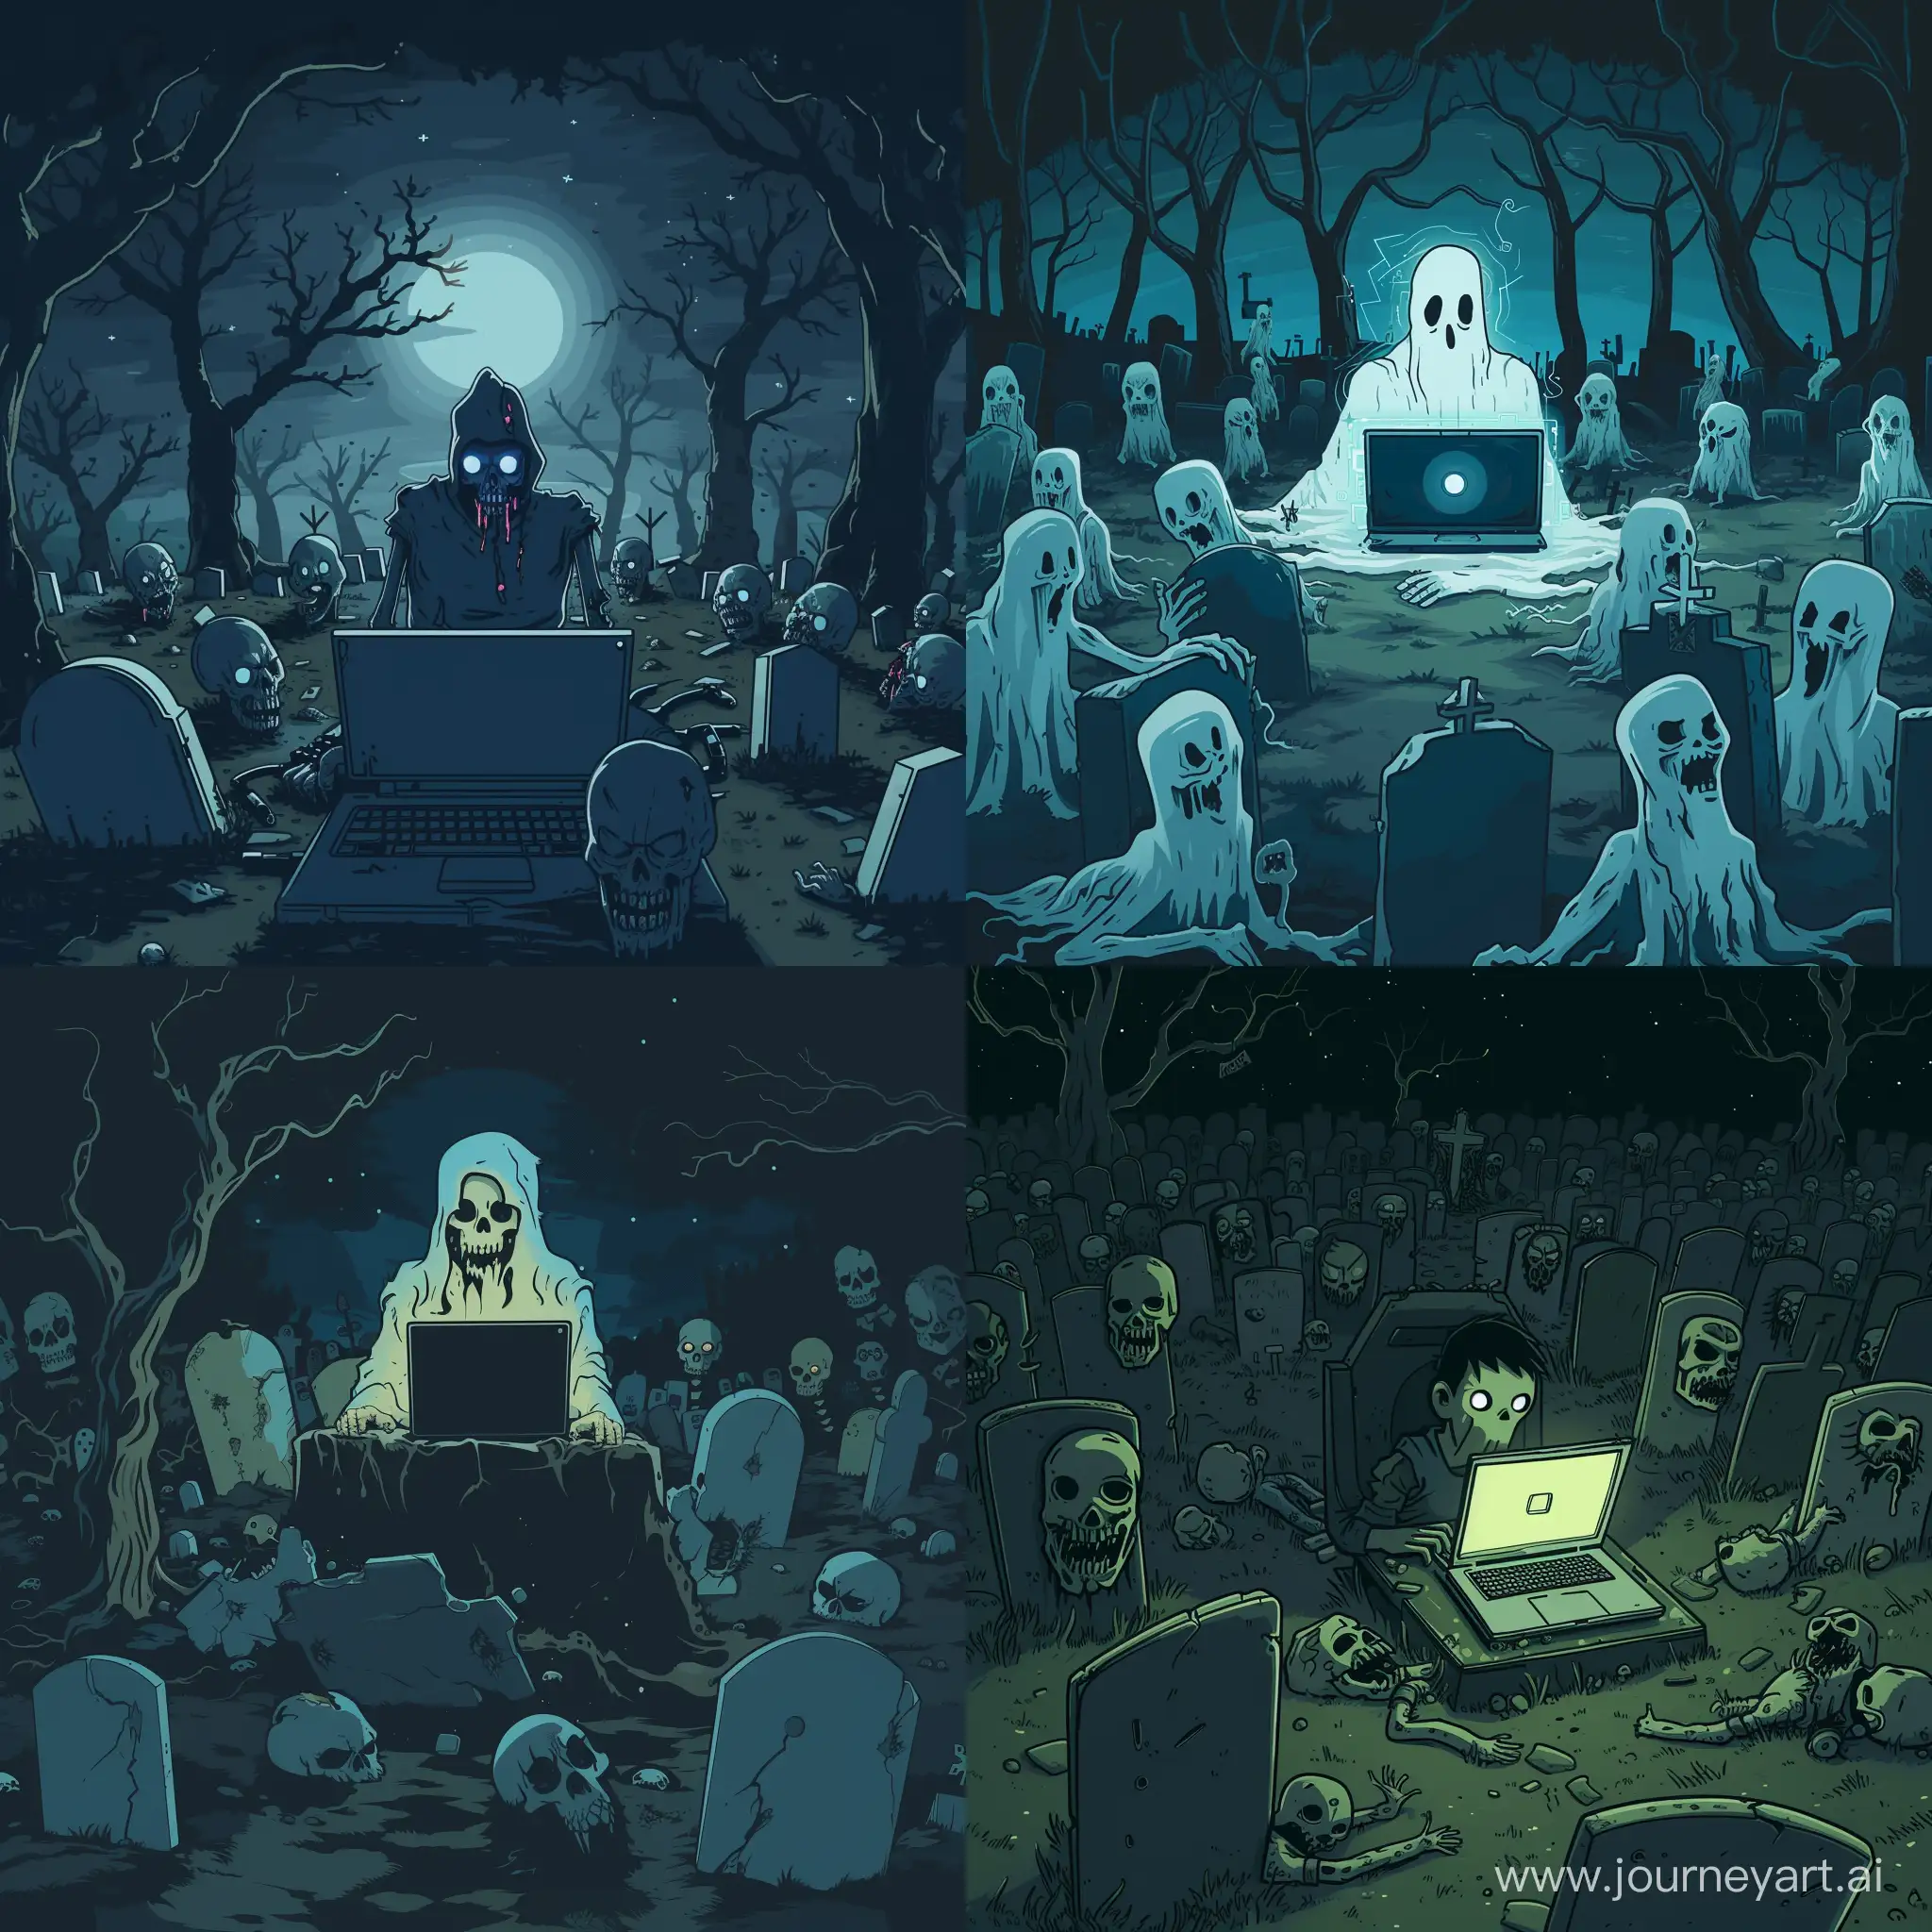 Самый могущественный хакер колдун призрак работает ночью на кладбище сидя за ноутбуком в окружении множества хакеров зомби